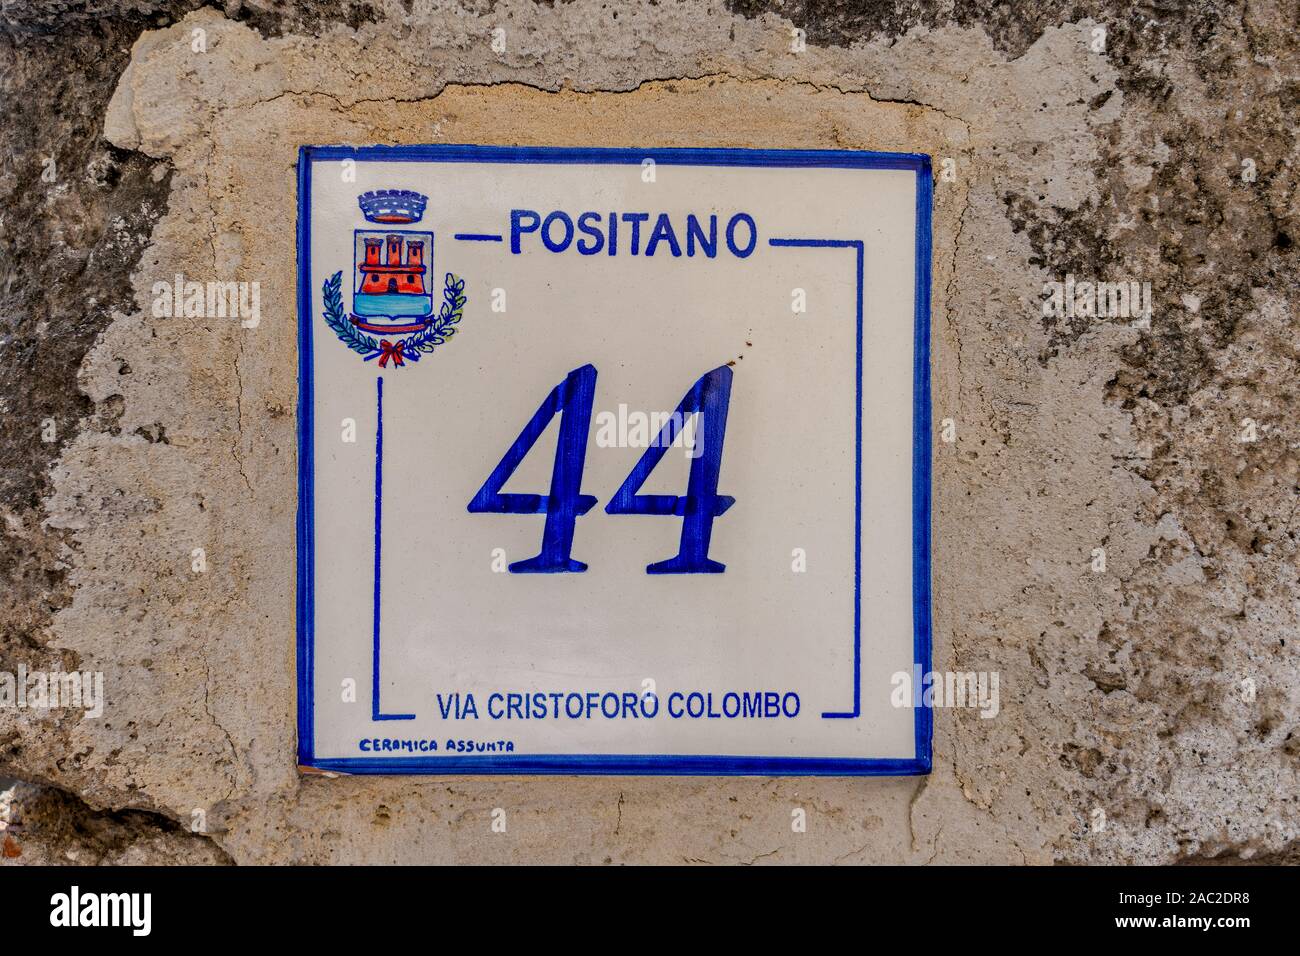 Positano, Italia - 12 agosto 2019: Ceramica assunta cresta del villaggio sulla strada di Positano Foto Stock